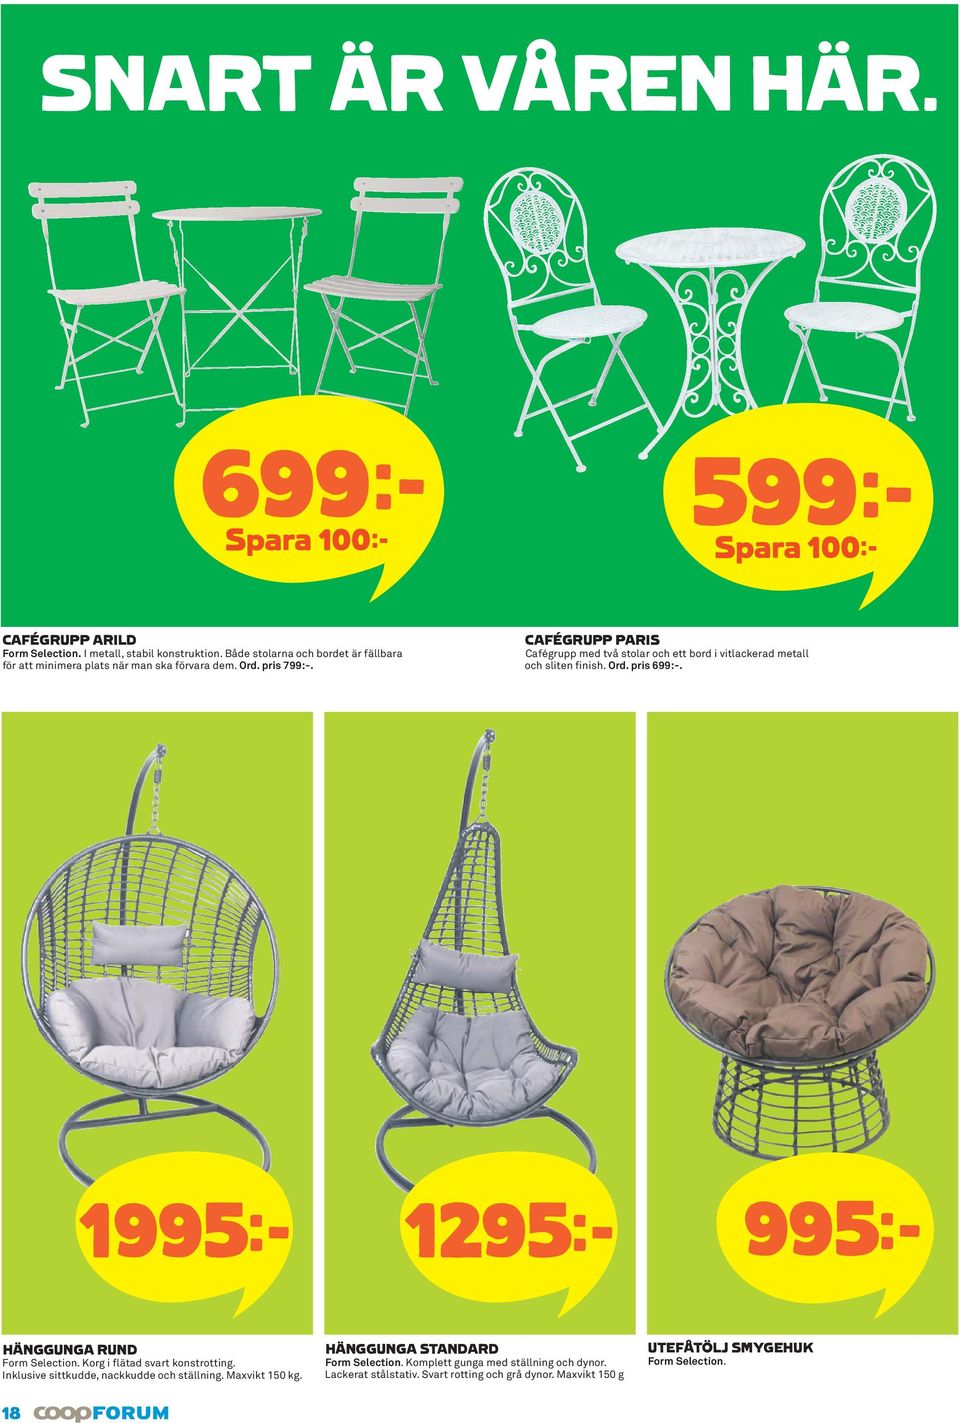 CAFÉGRUPP PARIS Cafégrupp med två stolar och ett bord i vitlackerad metall och sliten finish. Ord. pris 699:-. 1995k 1295k 995k HÄNGGUNGA RUND Form Selection.